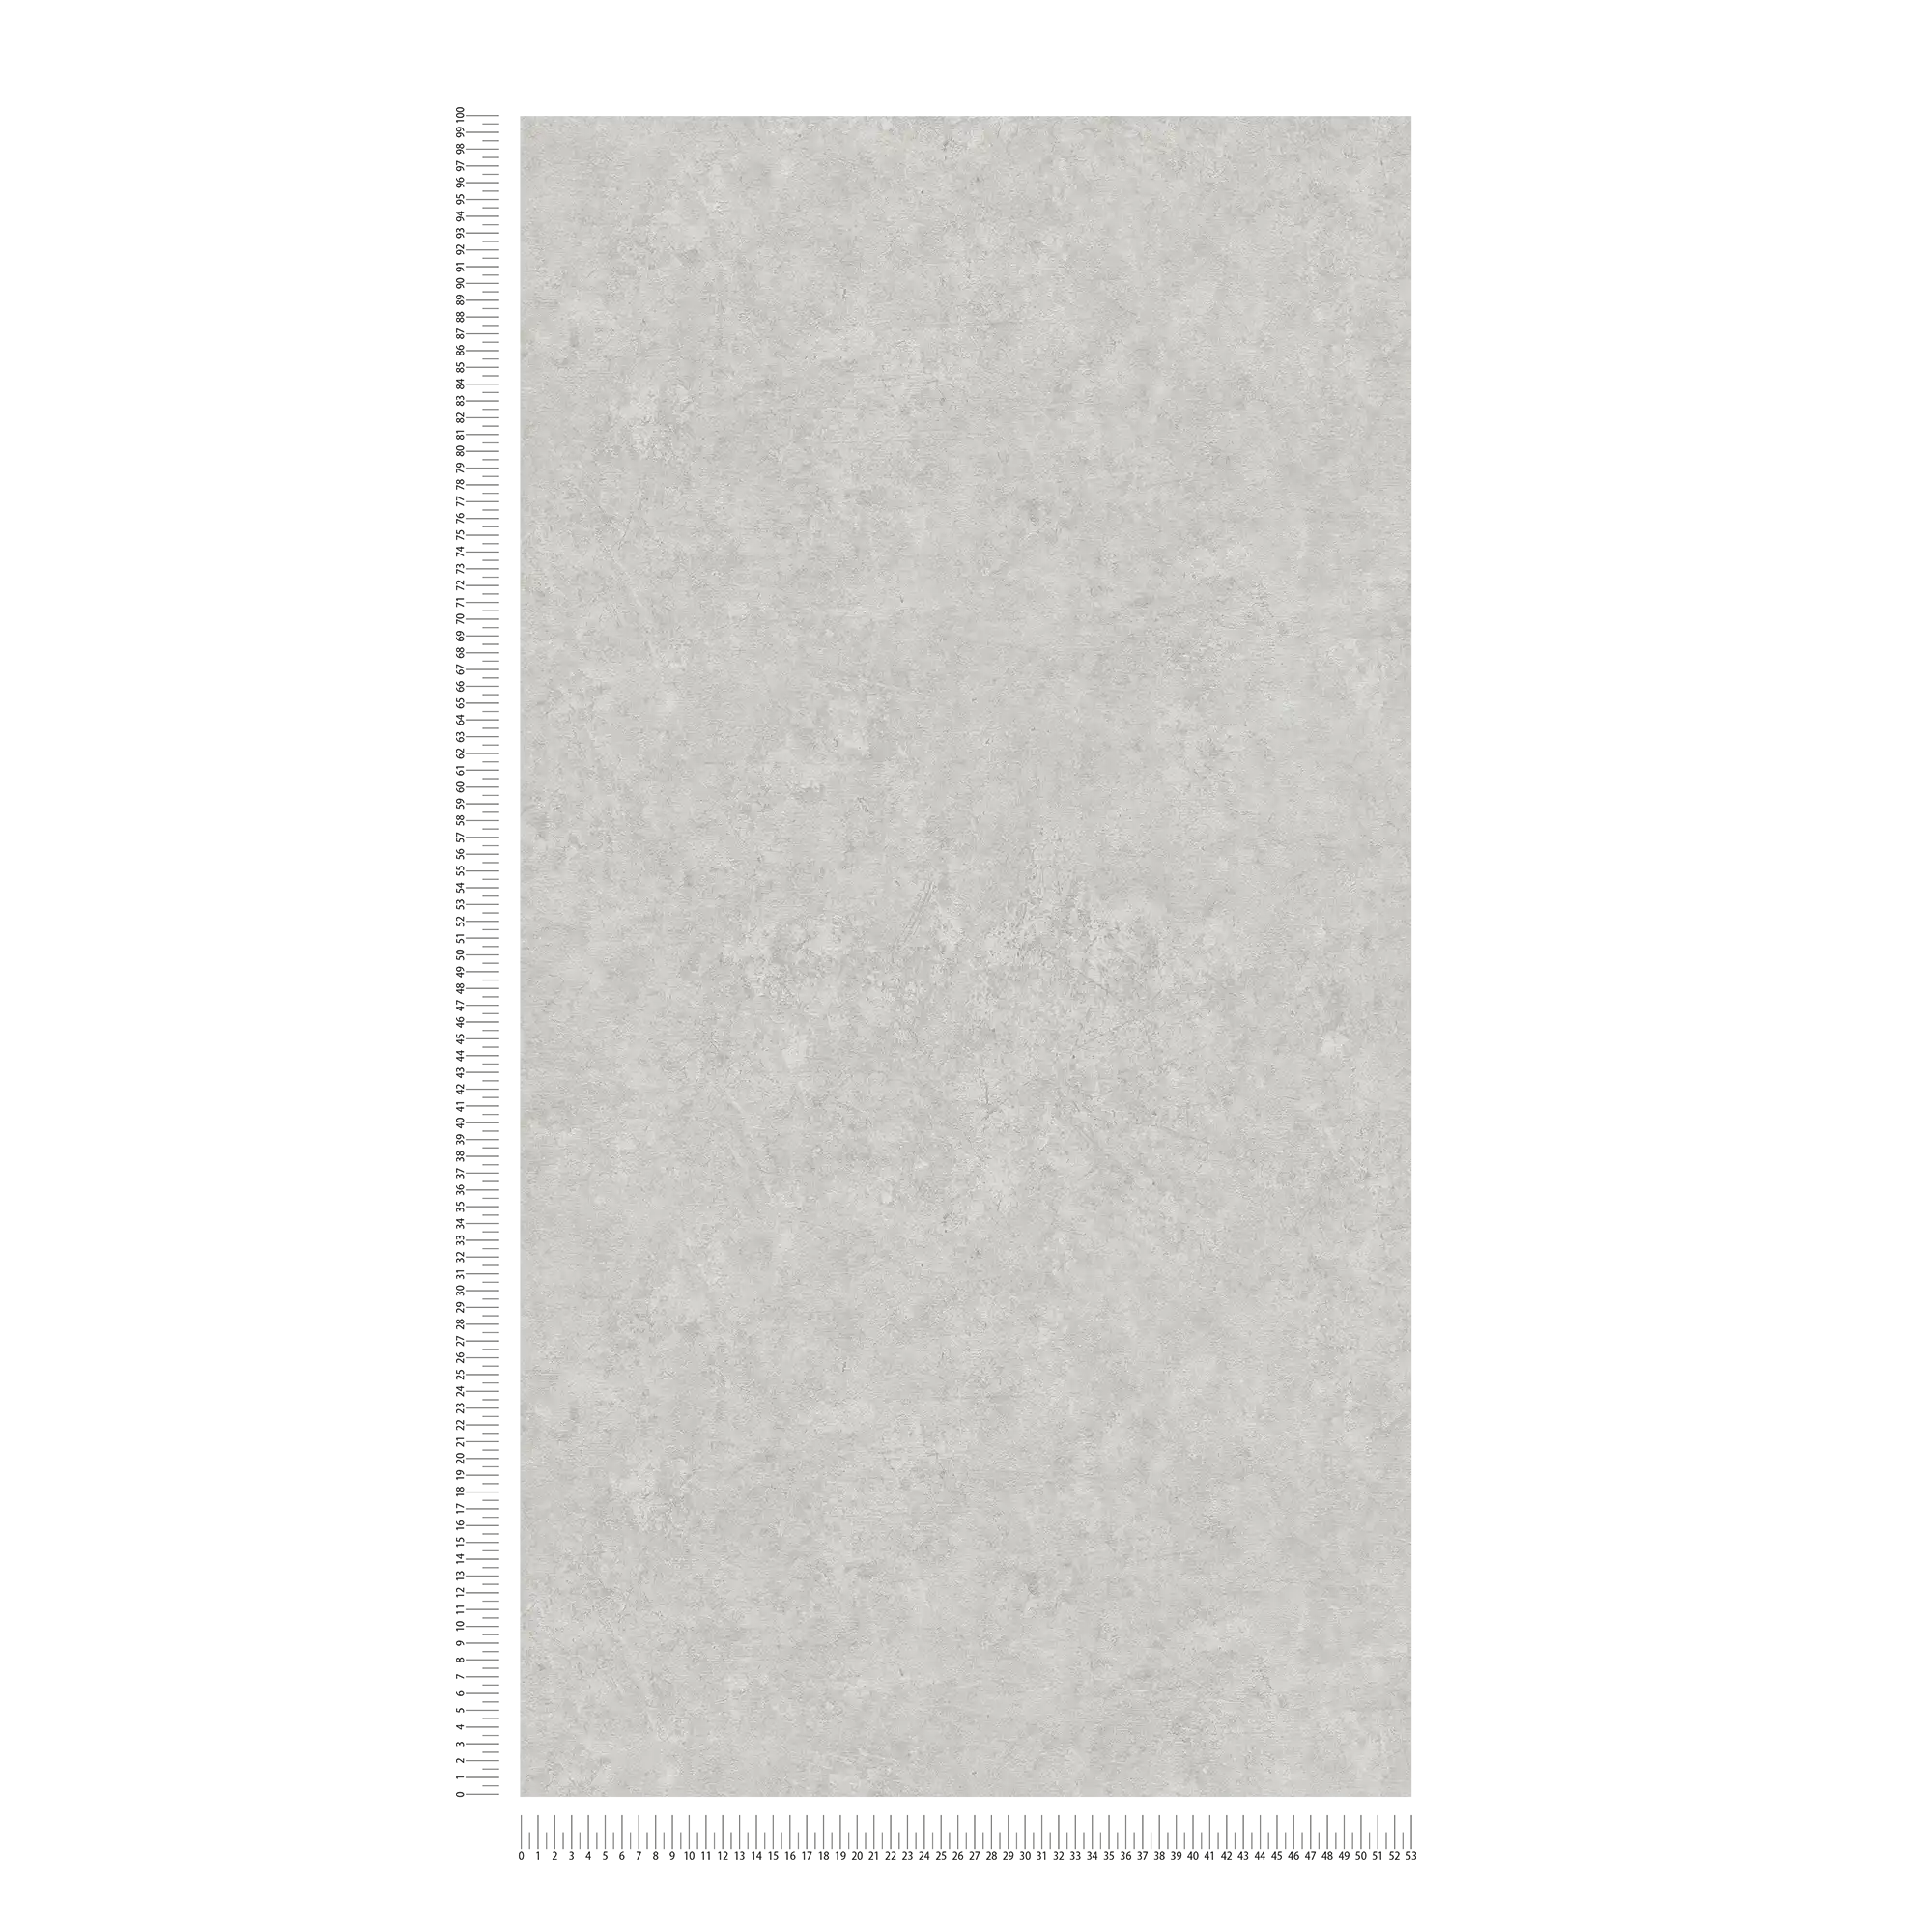             Carta da parati in tessuto non tessuto effetto cemento a tinta unita - grigio
        